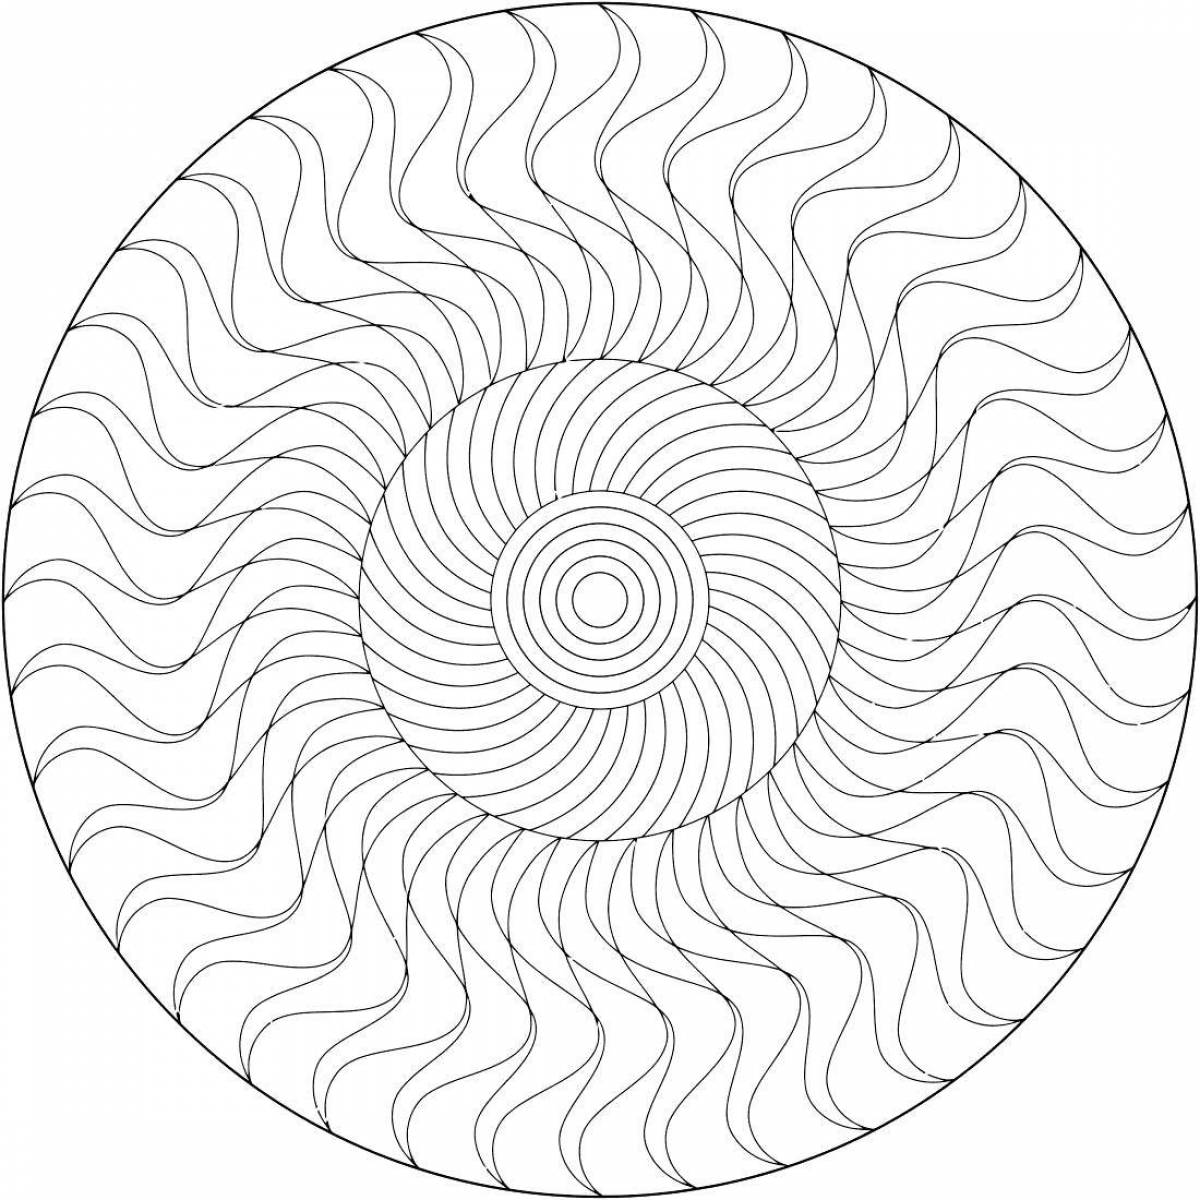 Adorable circle spiral coloring book